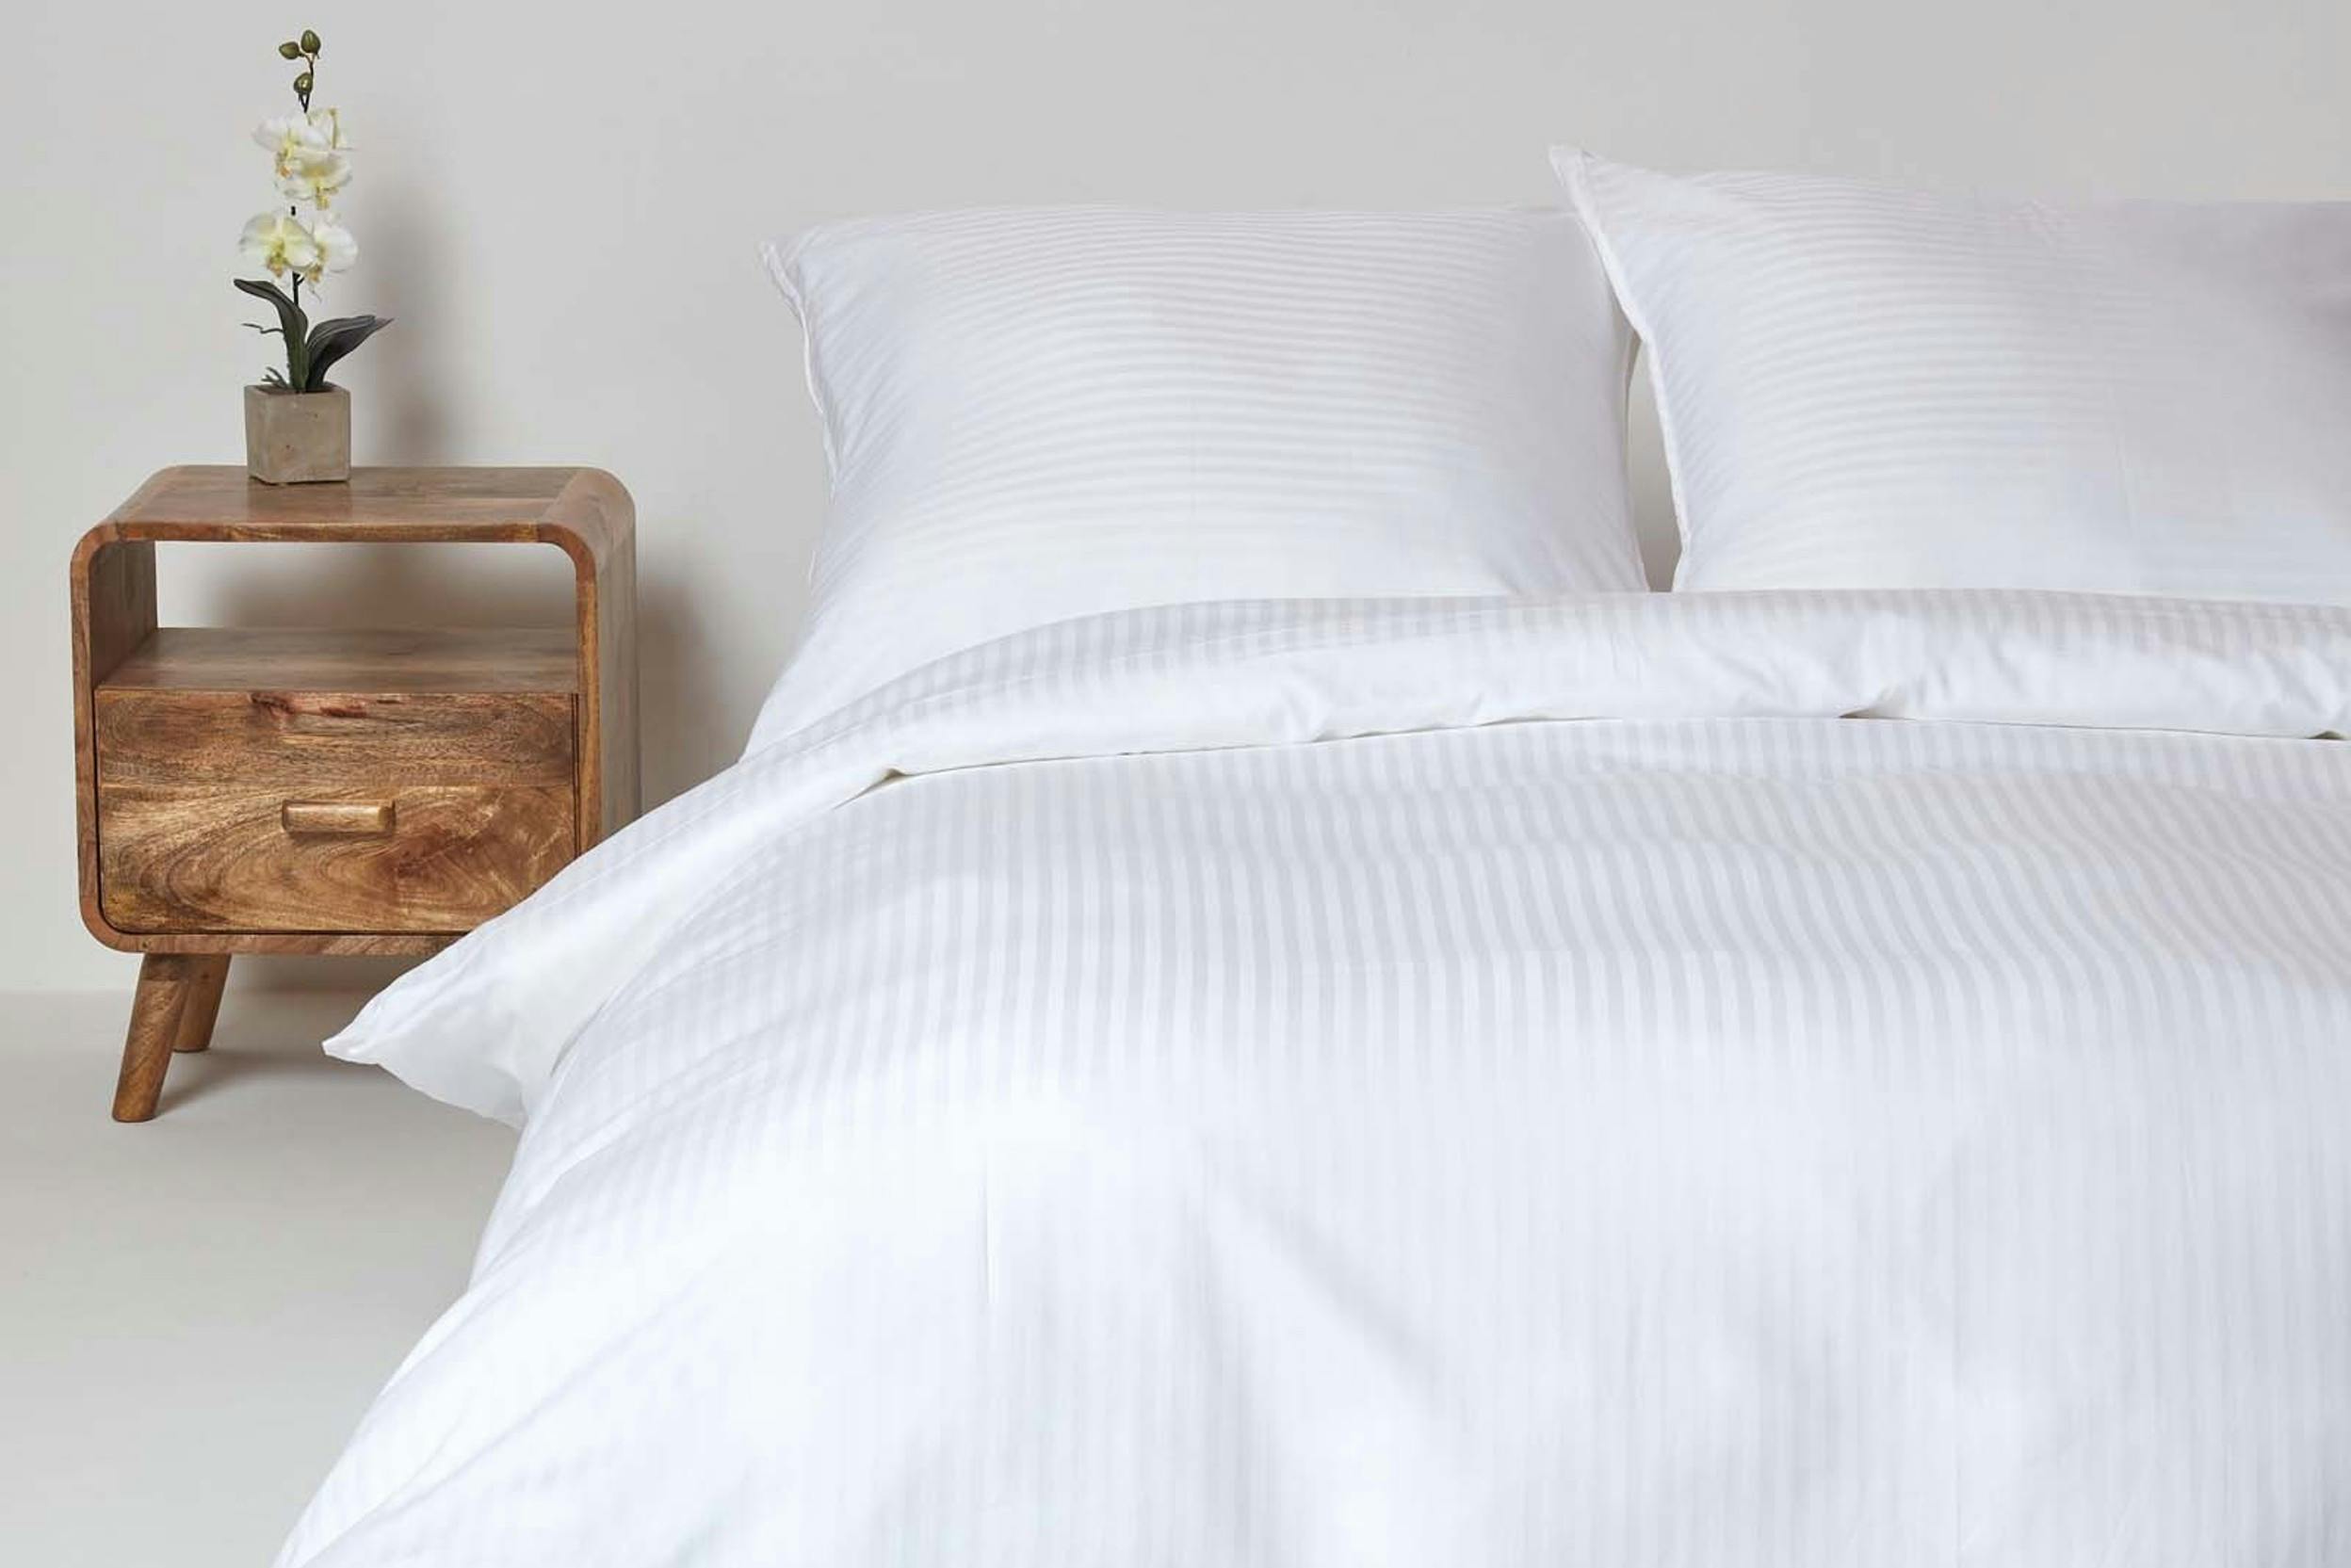 Damast-Bettwäsche im edlen Streifendesign neben einem modernen Holz-Nachttisch